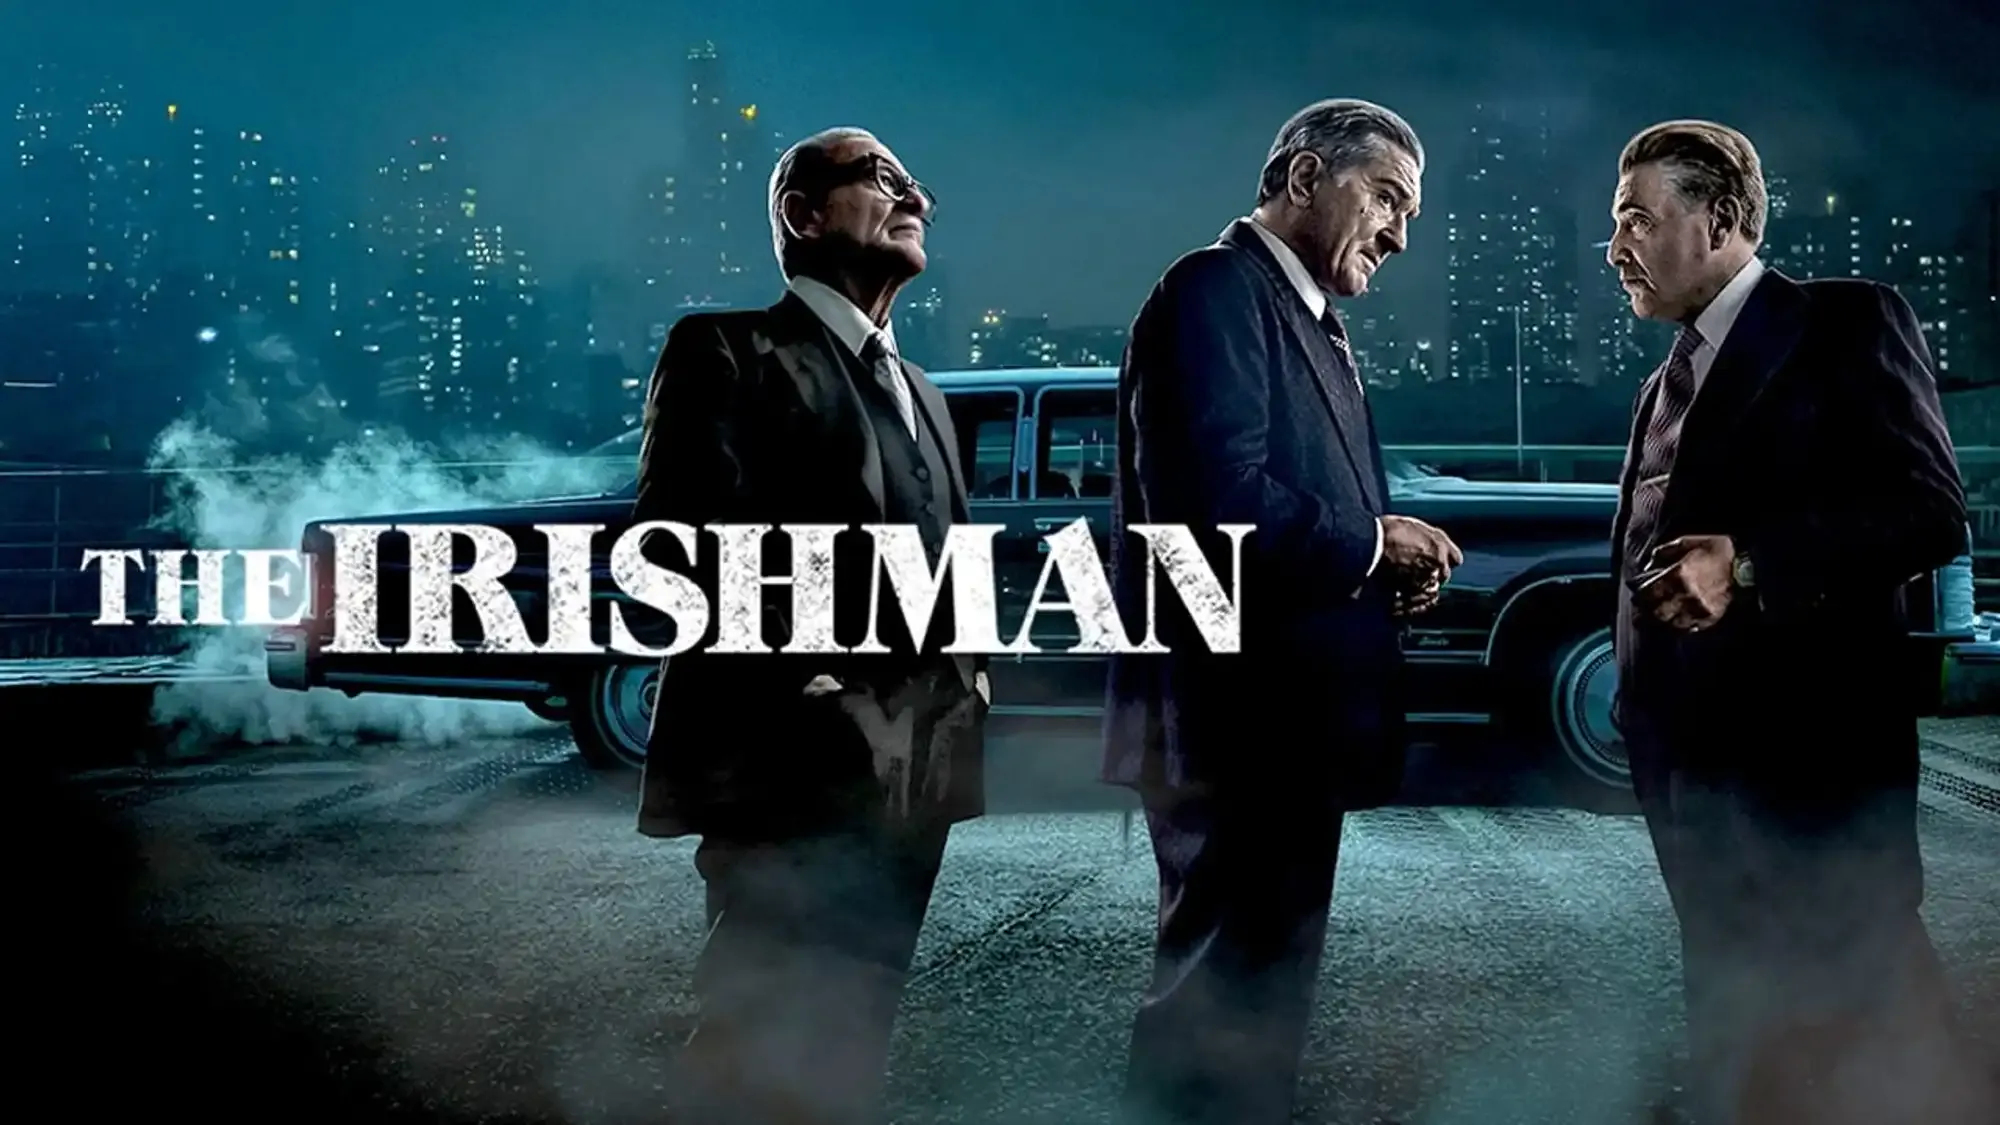 The Irishman movie review